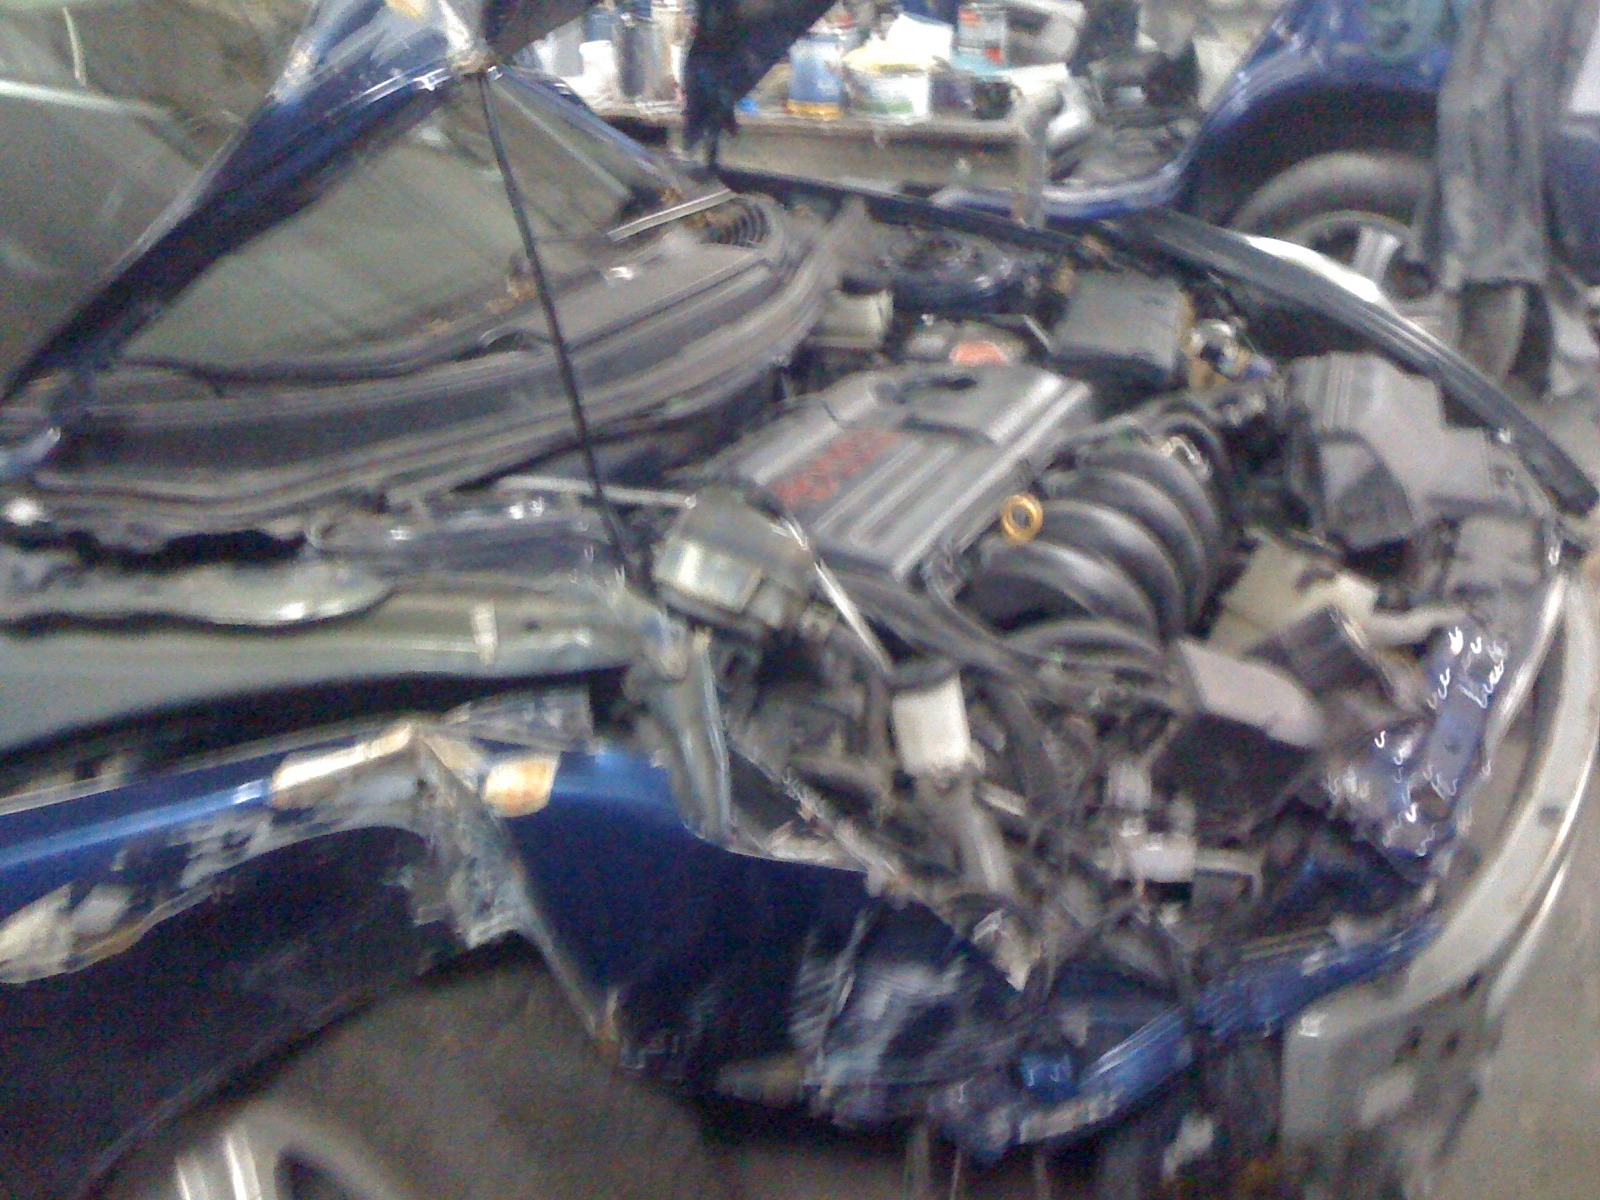      Toyota Celica 18 2003